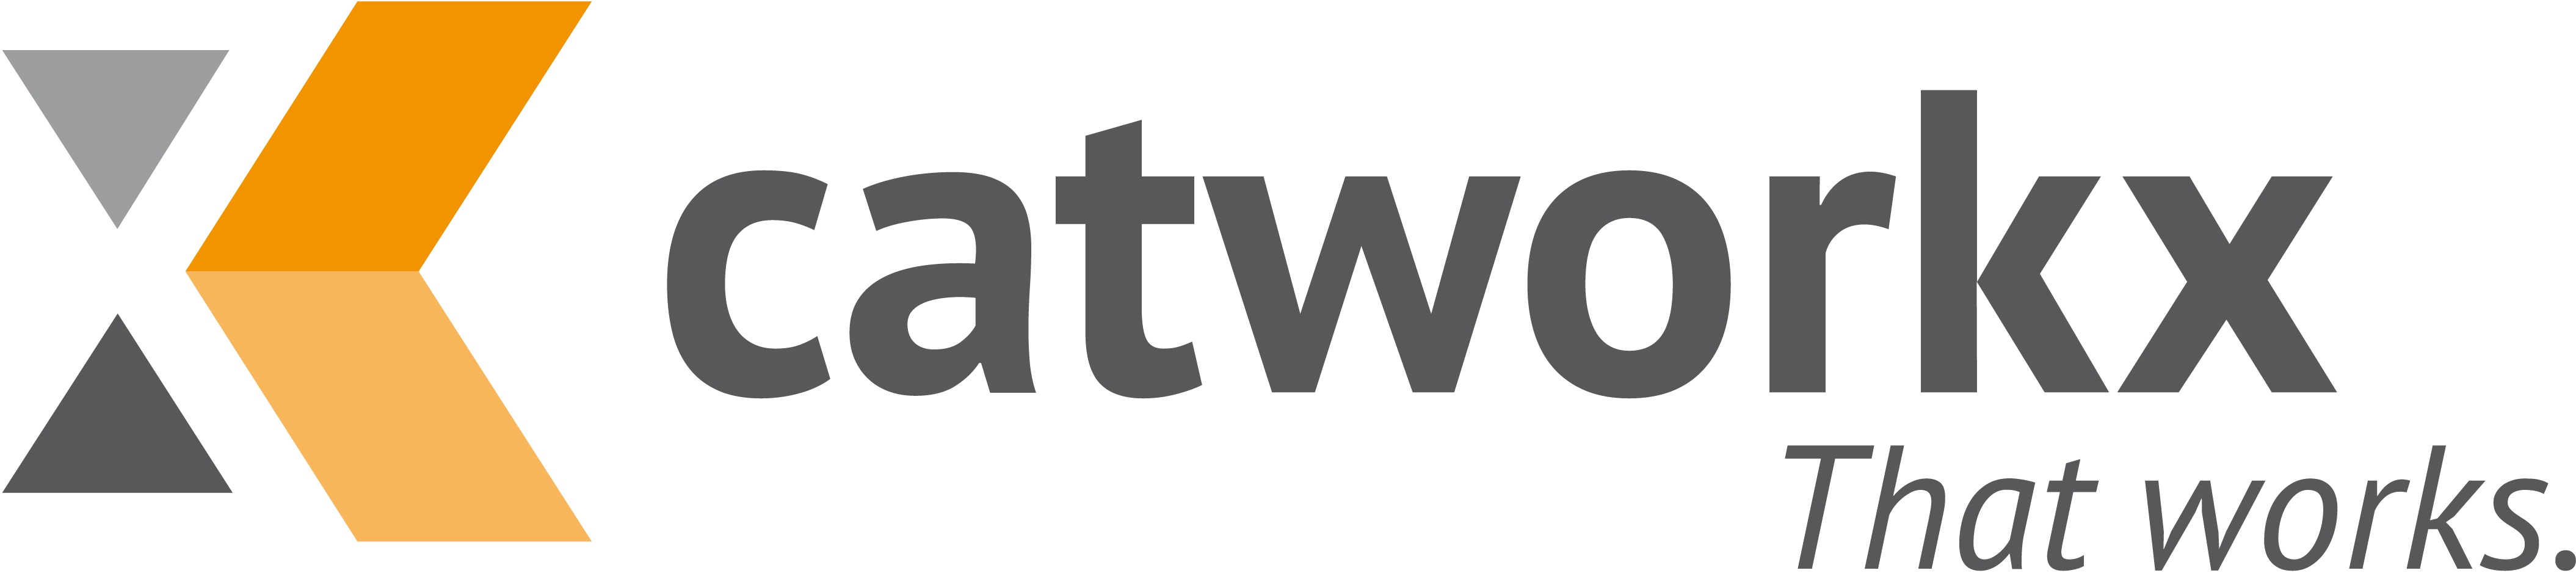 Catworkx 로고